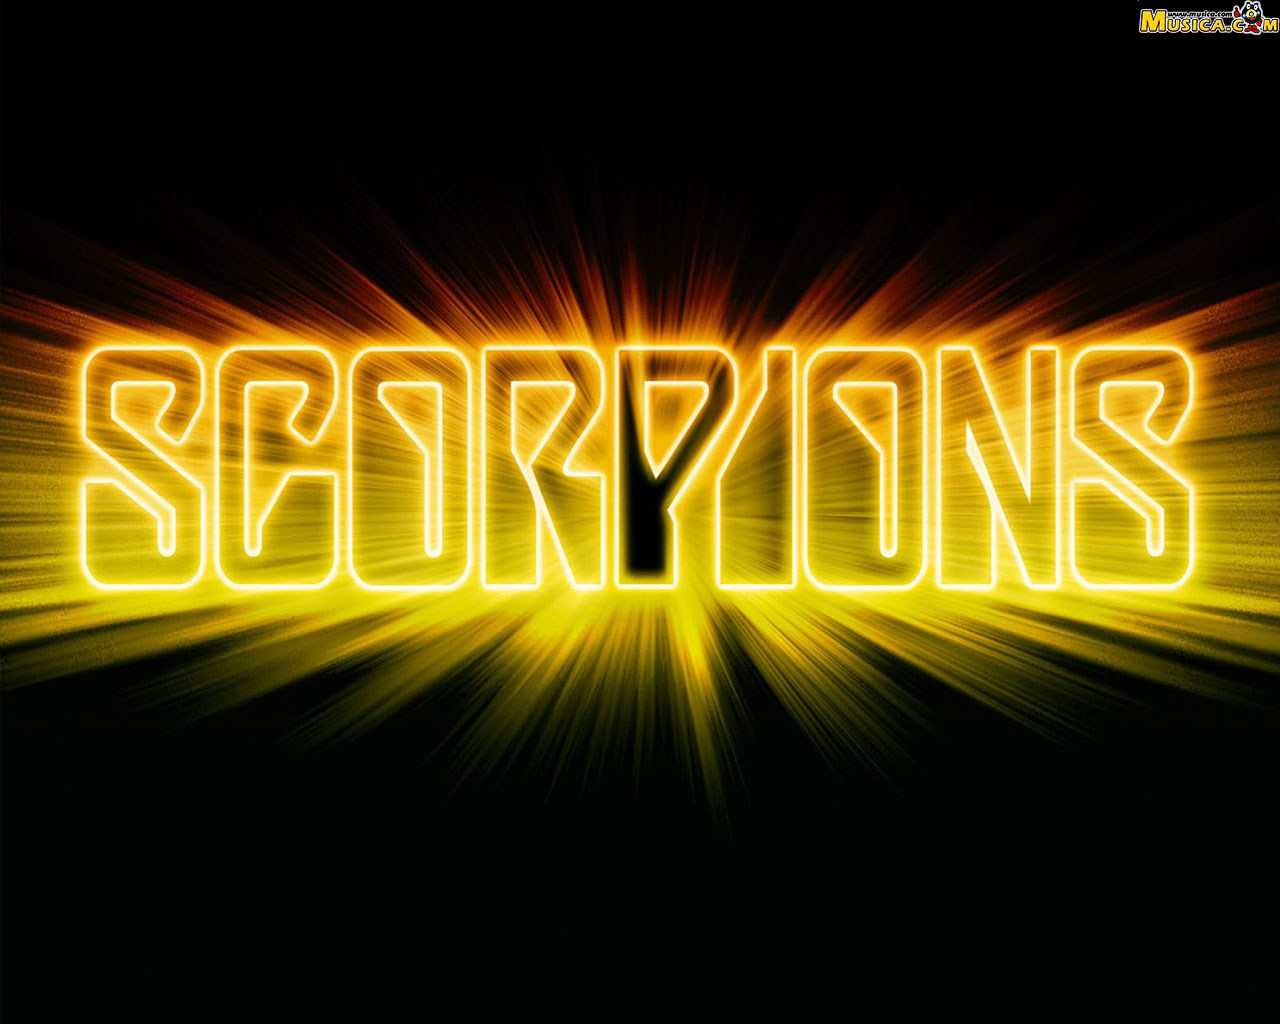 Fondo de pantalla de Scorpions